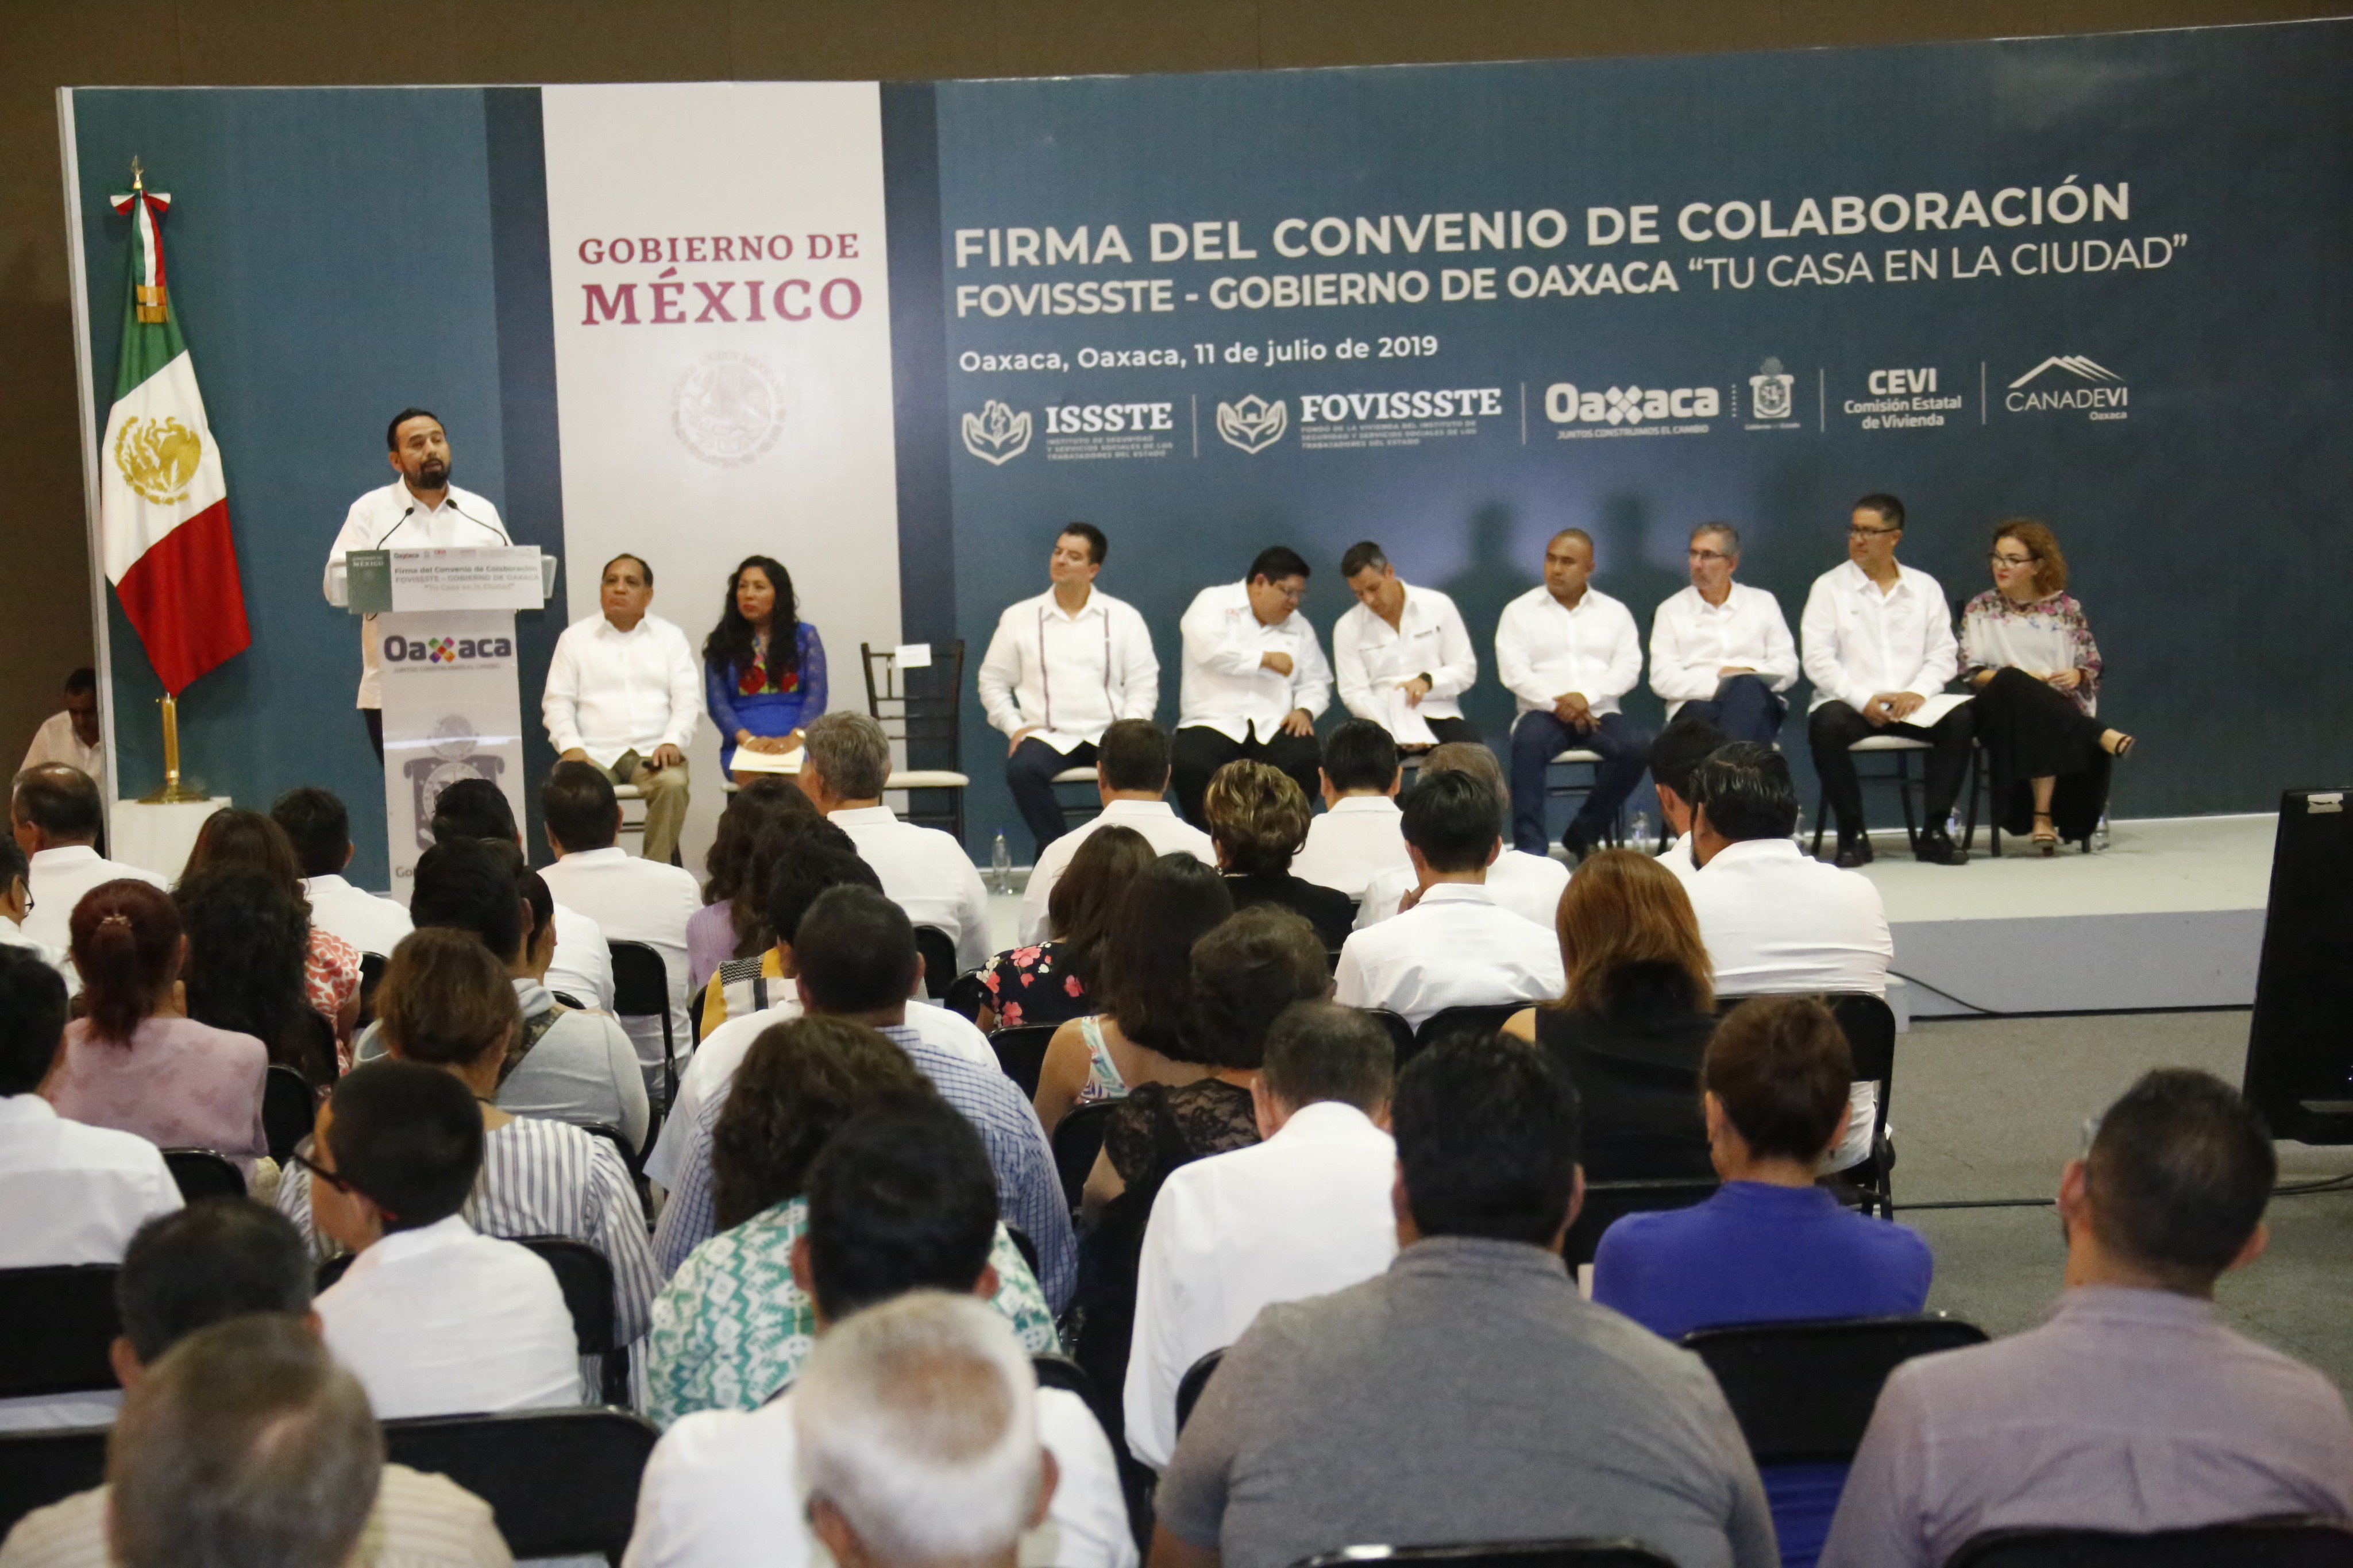 Fovissste impulsará la construcción de 1,600 viviendas en Oaxaca - IMG 20190712 112957